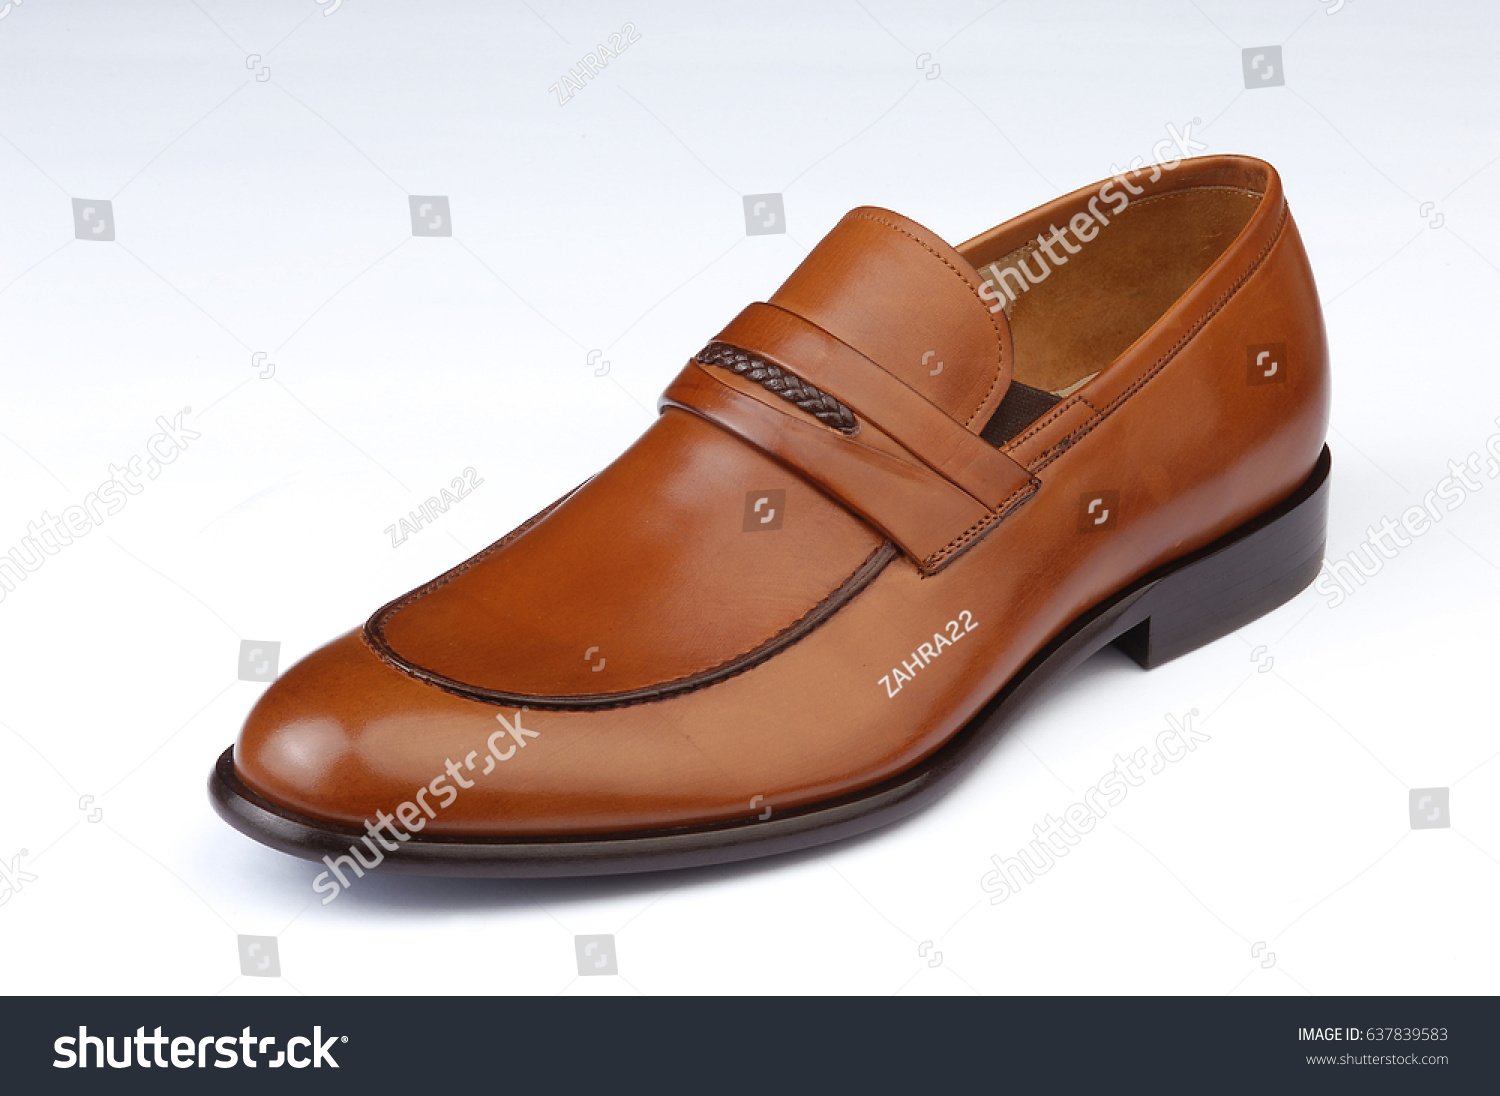 leather shoes no laces